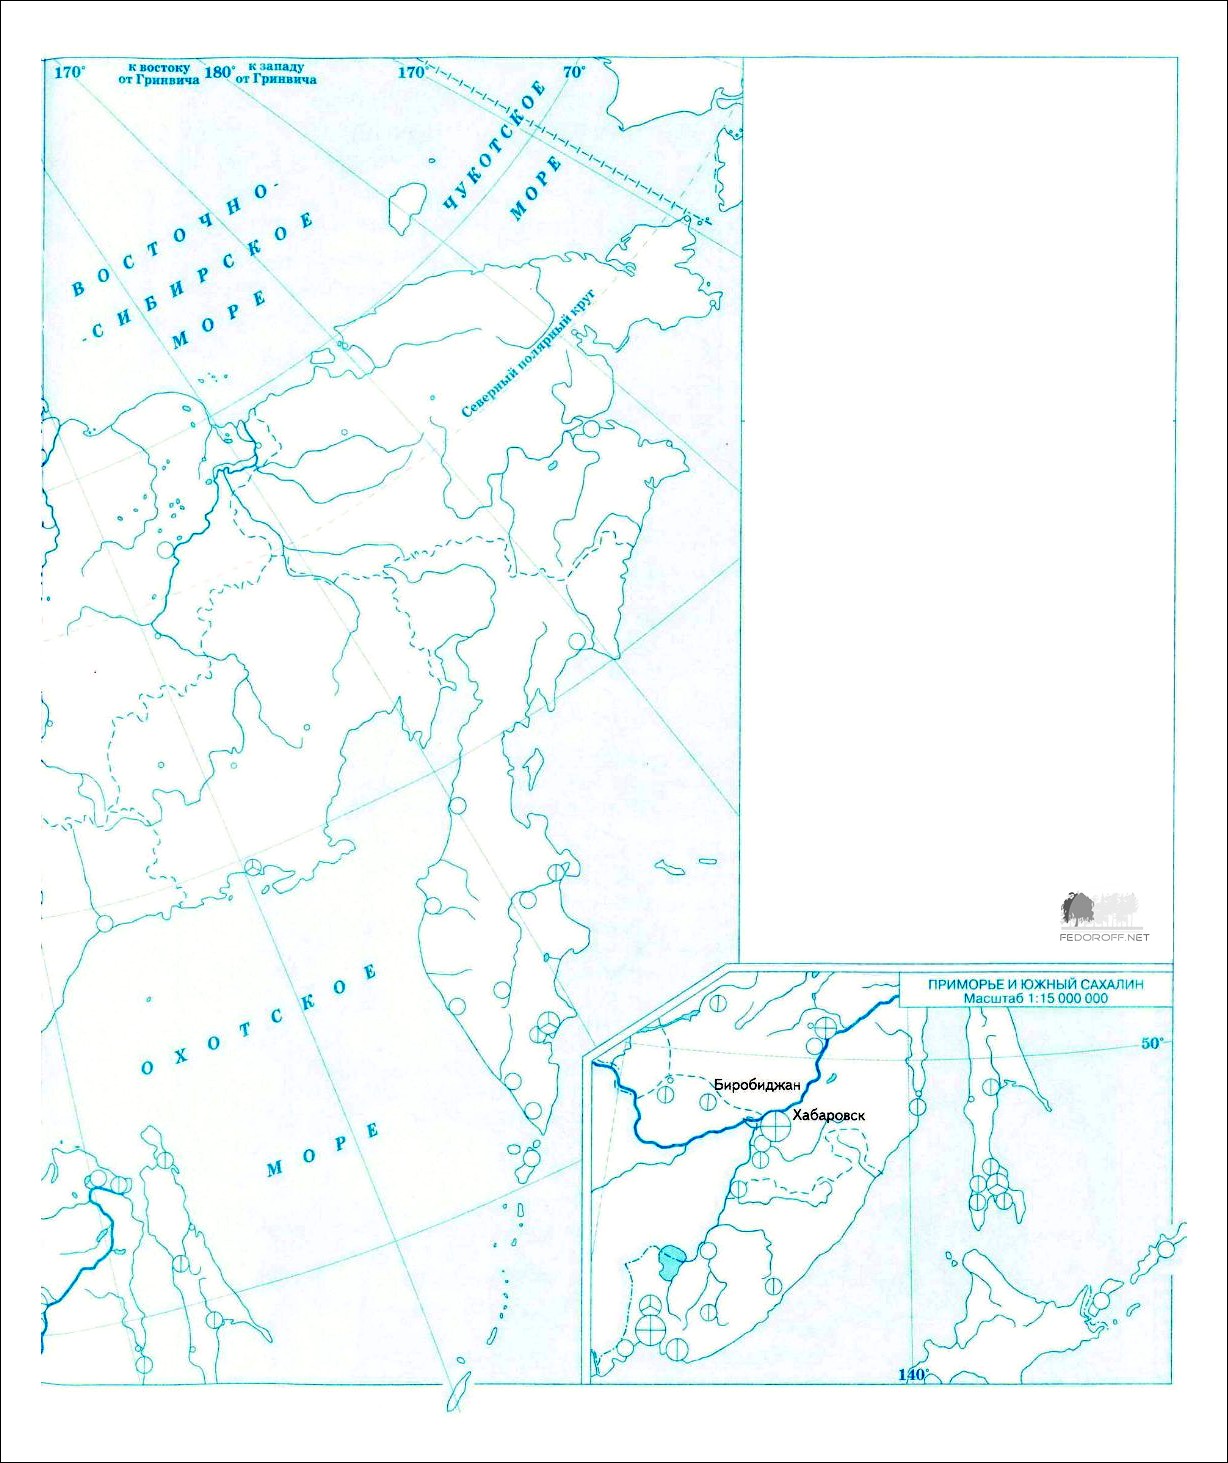 Восточная сибирь и дальний восток контурная карта 9 класс полярная звезда гдз